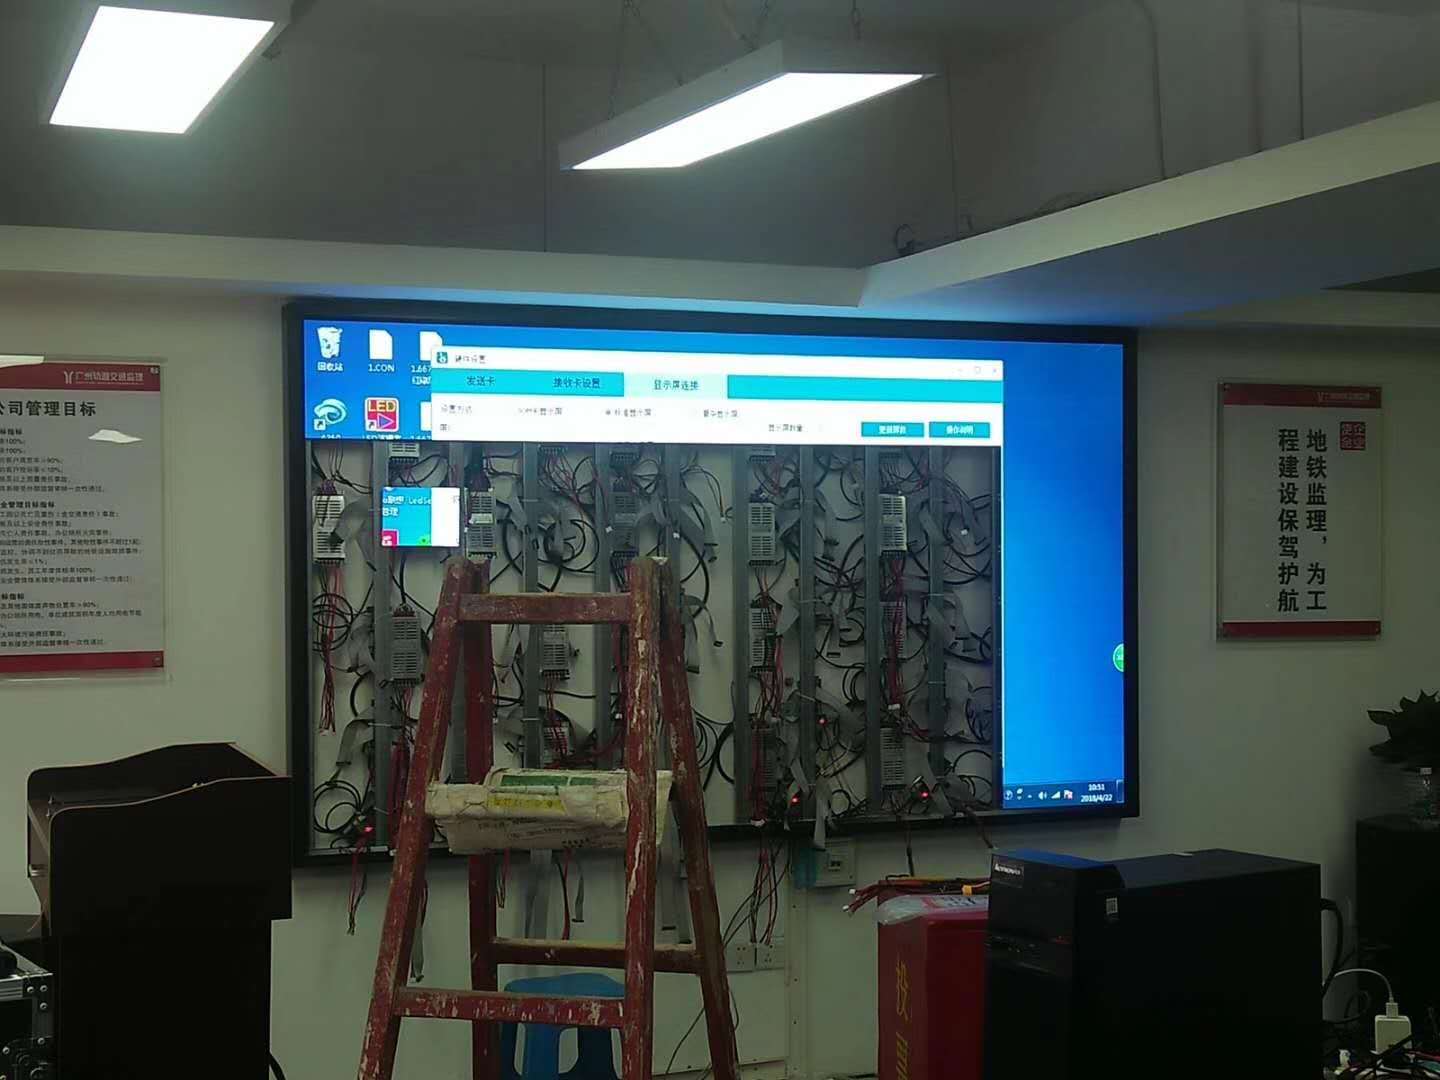 都匀会议室LED显示屏